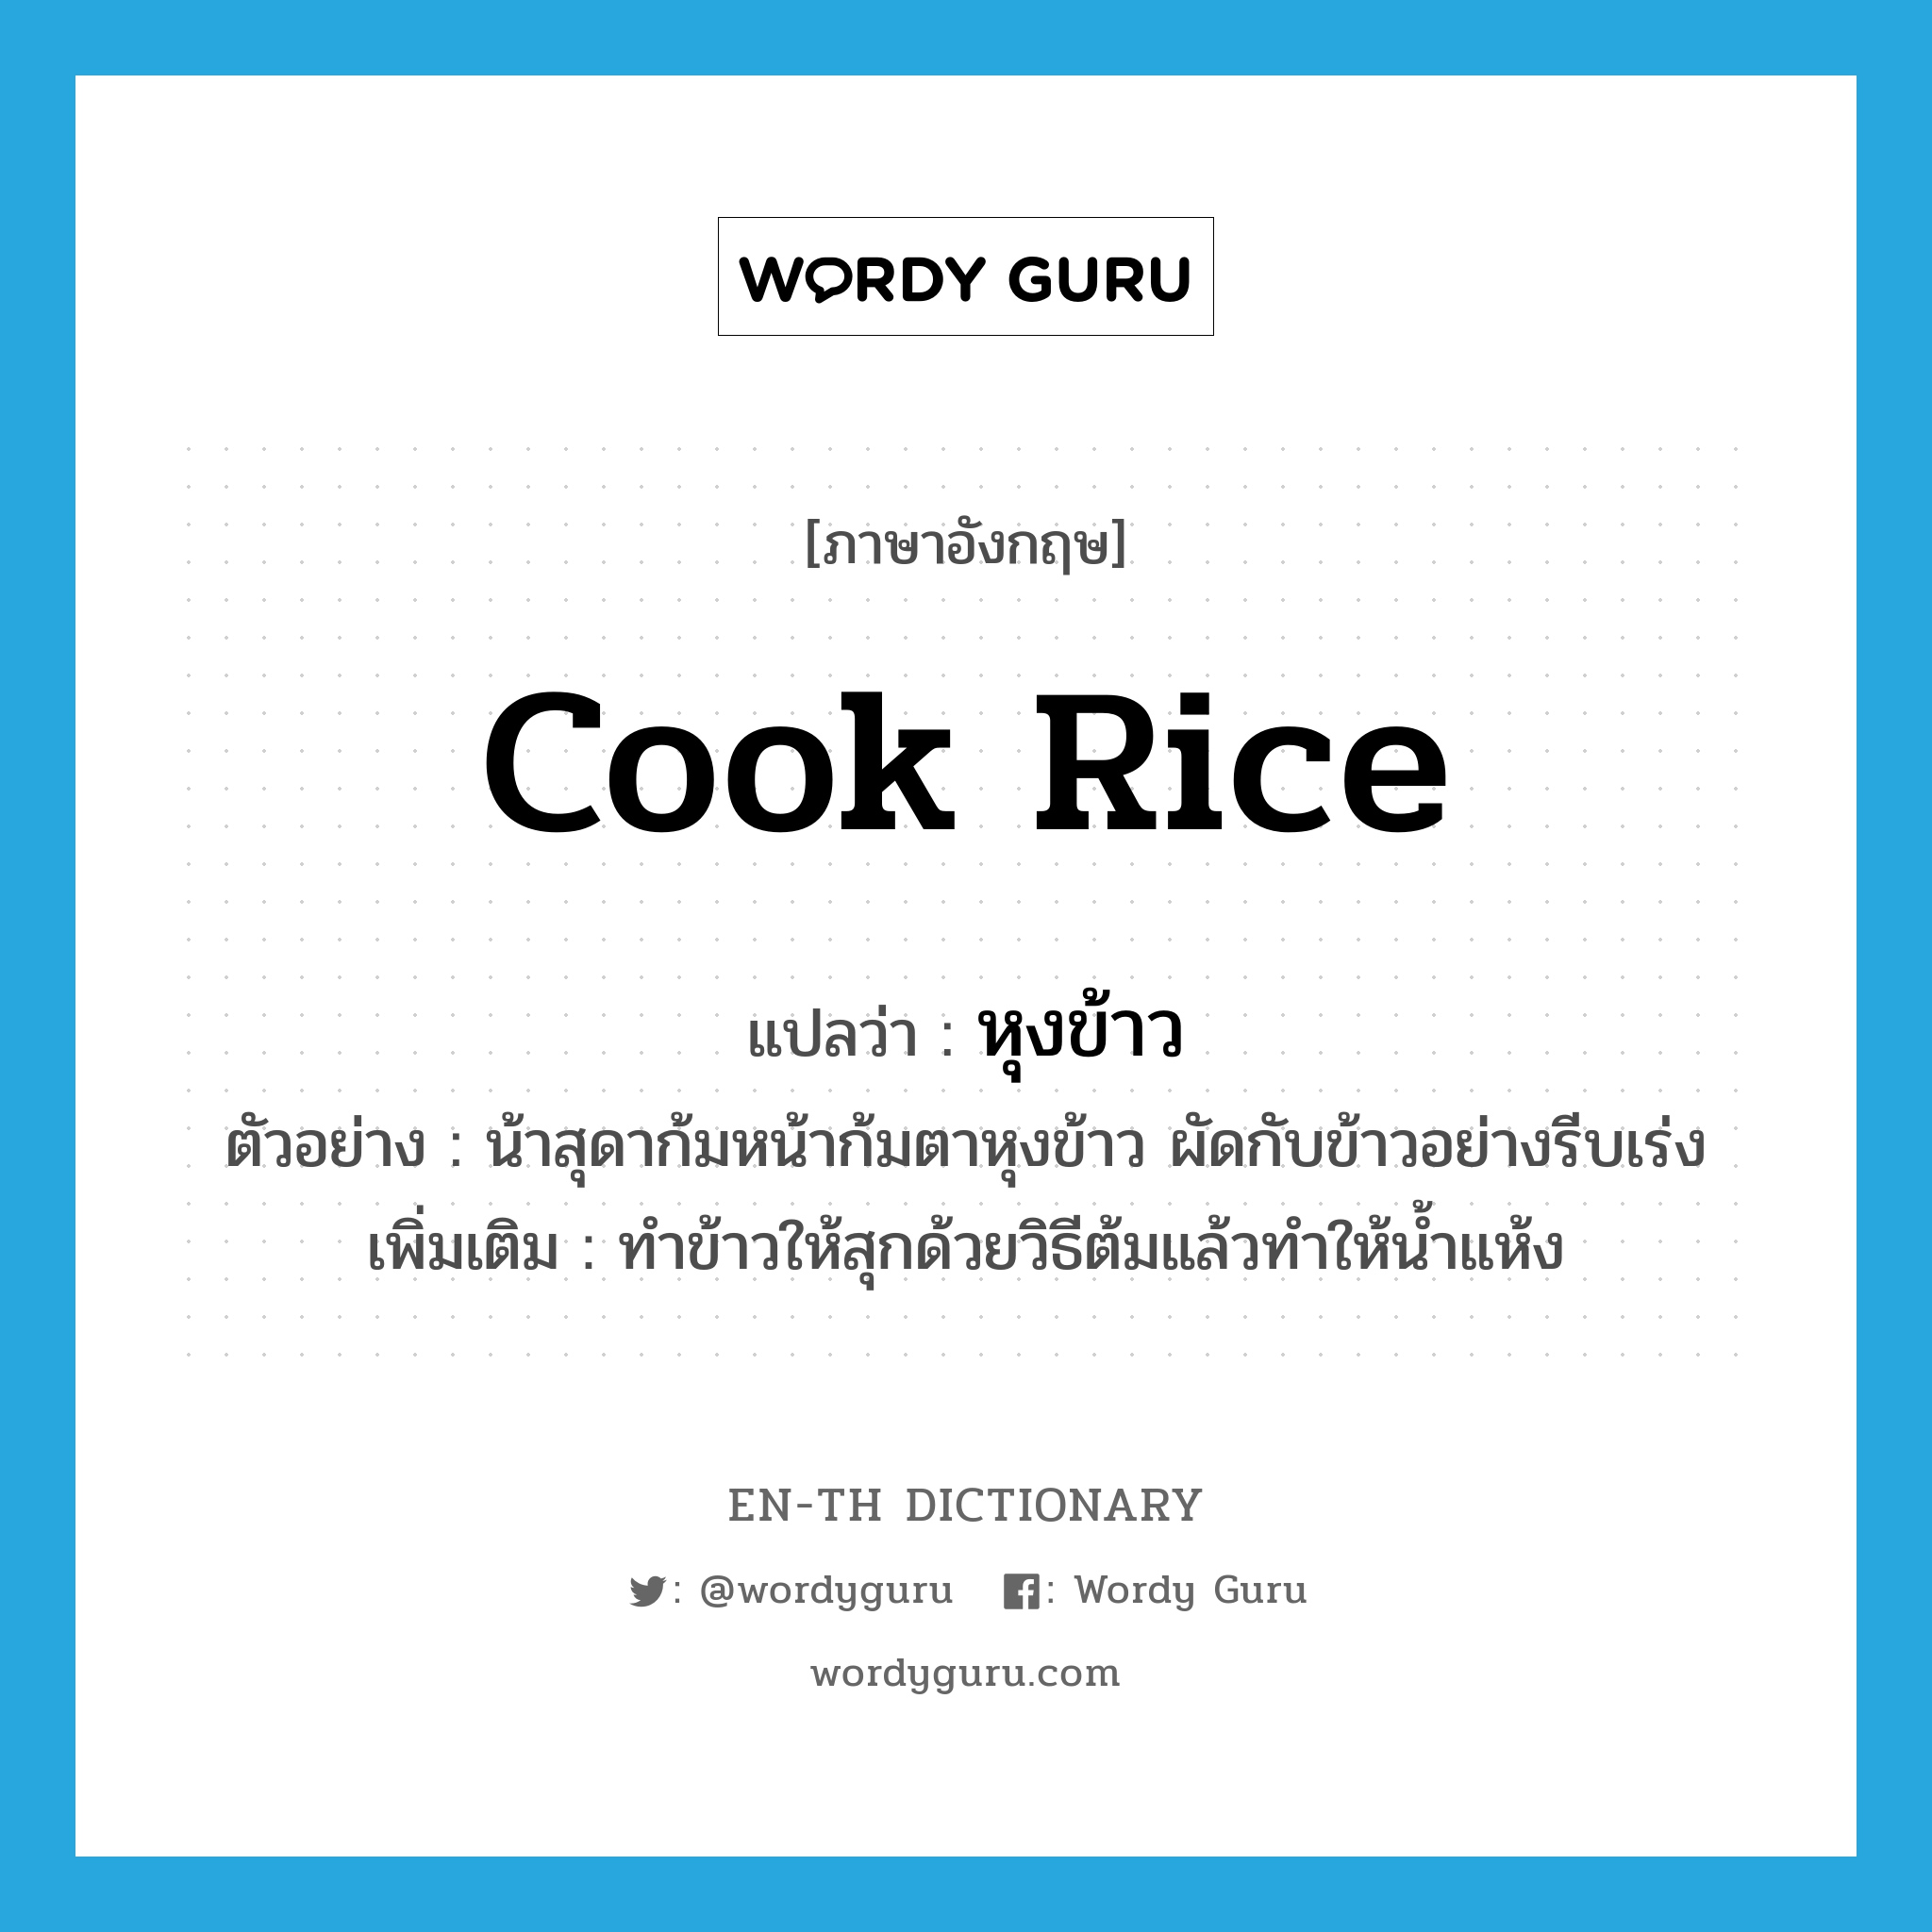 cook rice แปลว่า?, คำศัพท์ภาษาอังกฤษ cook rice แปลว่า หุงข้าว ประเภท V ตัวอย่าง น้าสุดาก้มหน้าก้มตาหุงข้าว ผัดกับข้าวอย่างรีบเร่ง เพิ่มเติม ทำข้าวให้สุกด้วยวิธีต้มแล้วทำให้น้ำแห้ง หมวด V